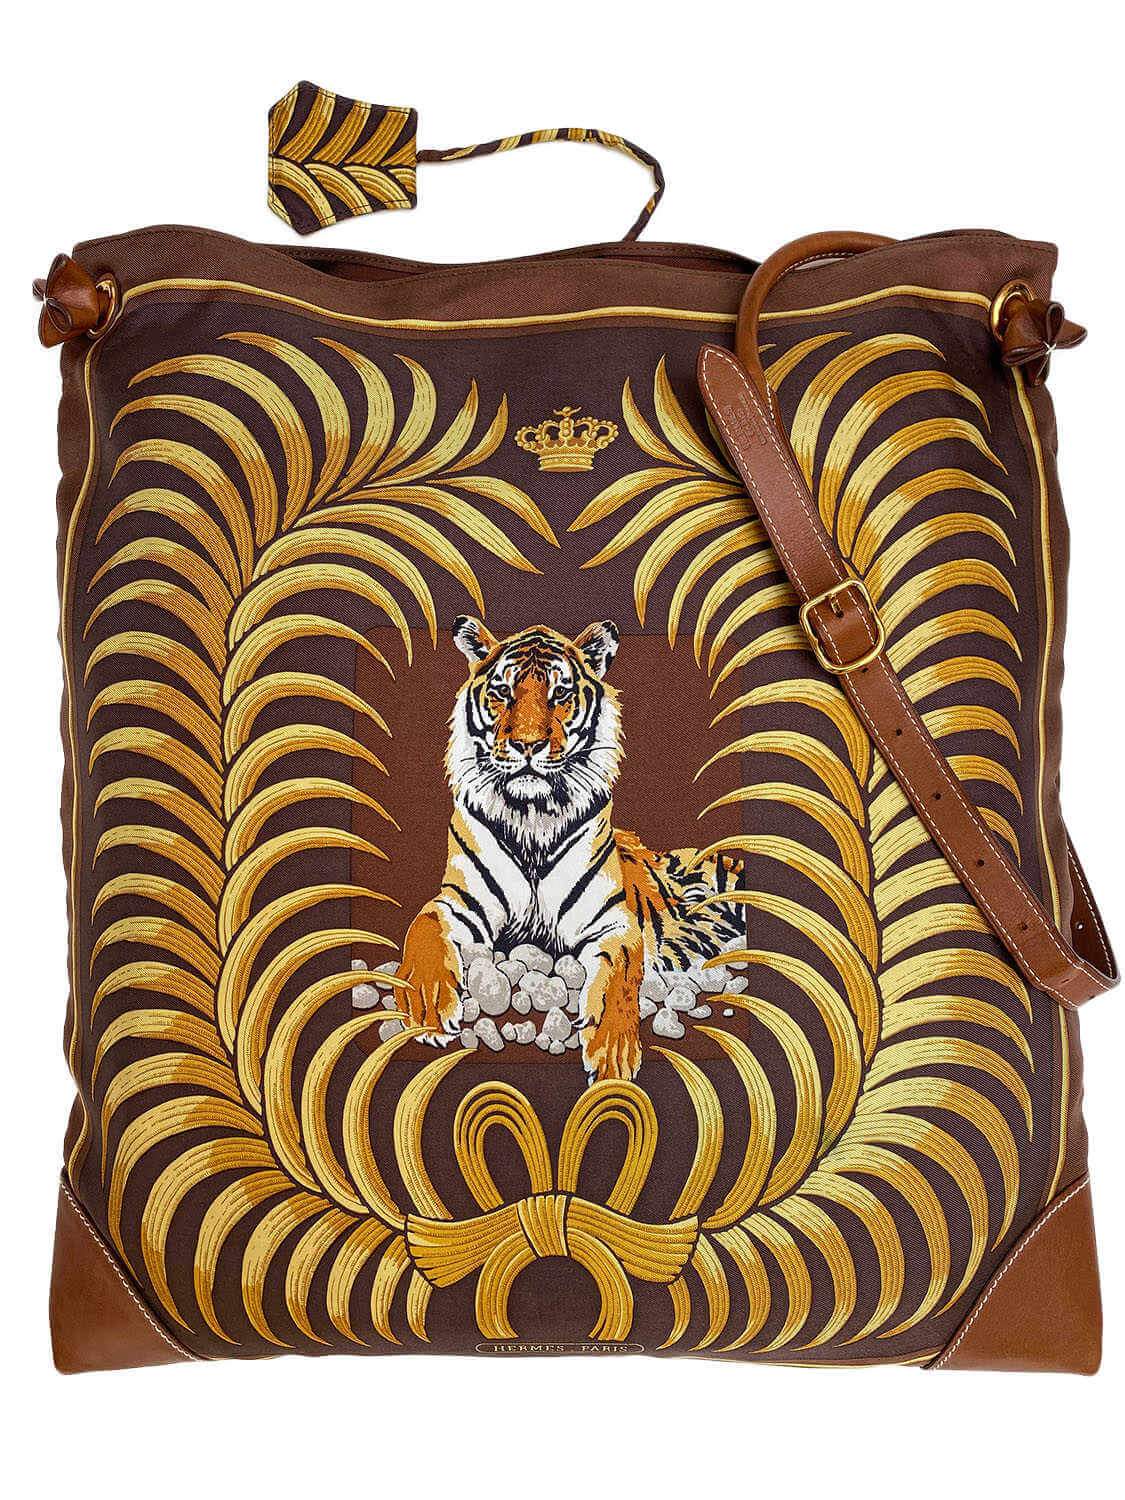 Hermes Tiger Print Silky City Messenger Bag Brown-designer resale